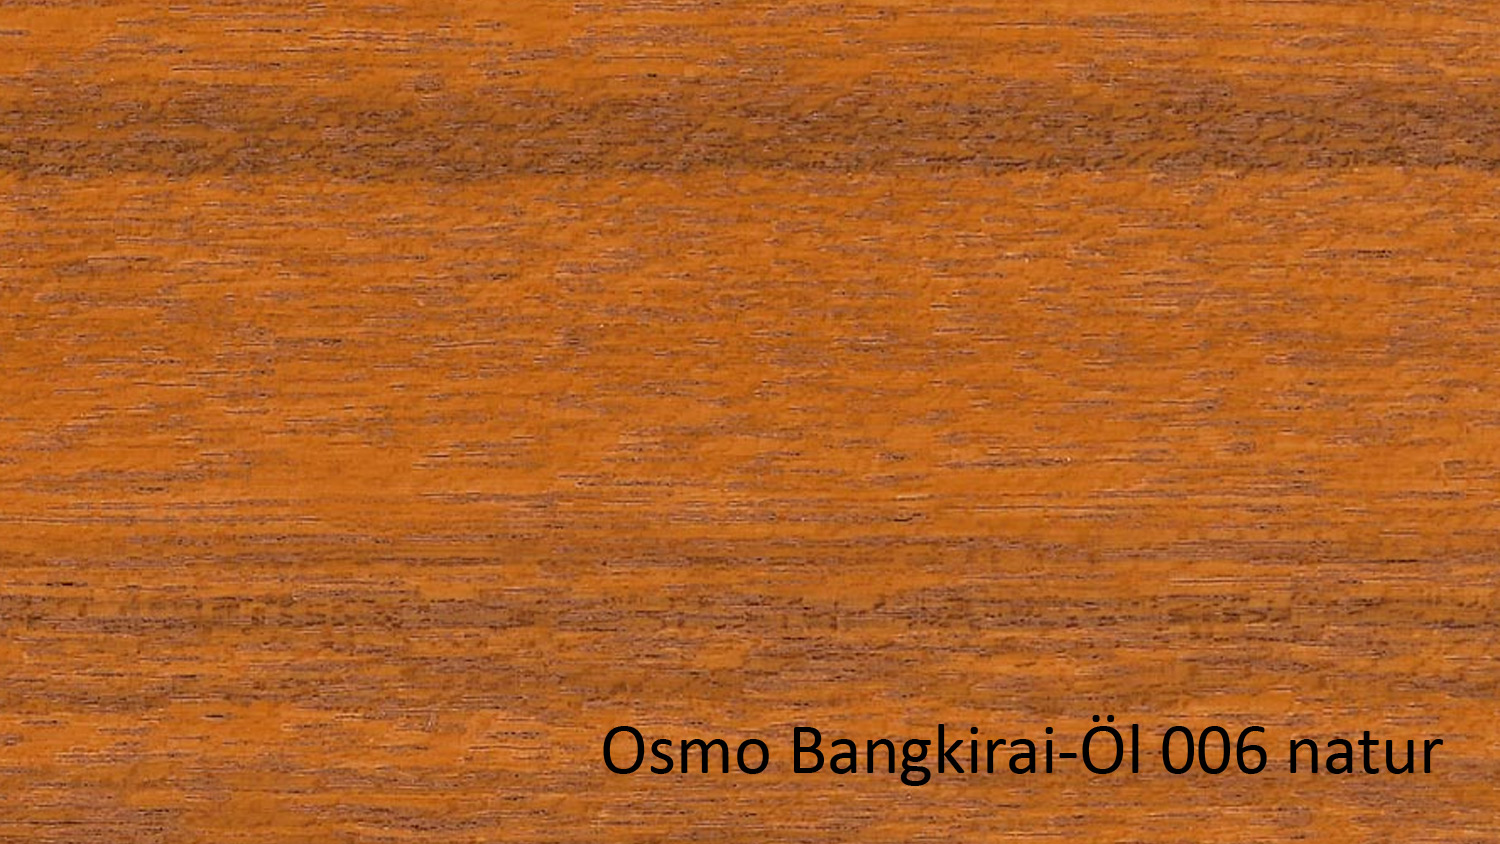 Osmo Terrassenöl 006 Bangkirai-Öl Naturgetönt 0,75l (für Nadel- u. Edelhölzer) 